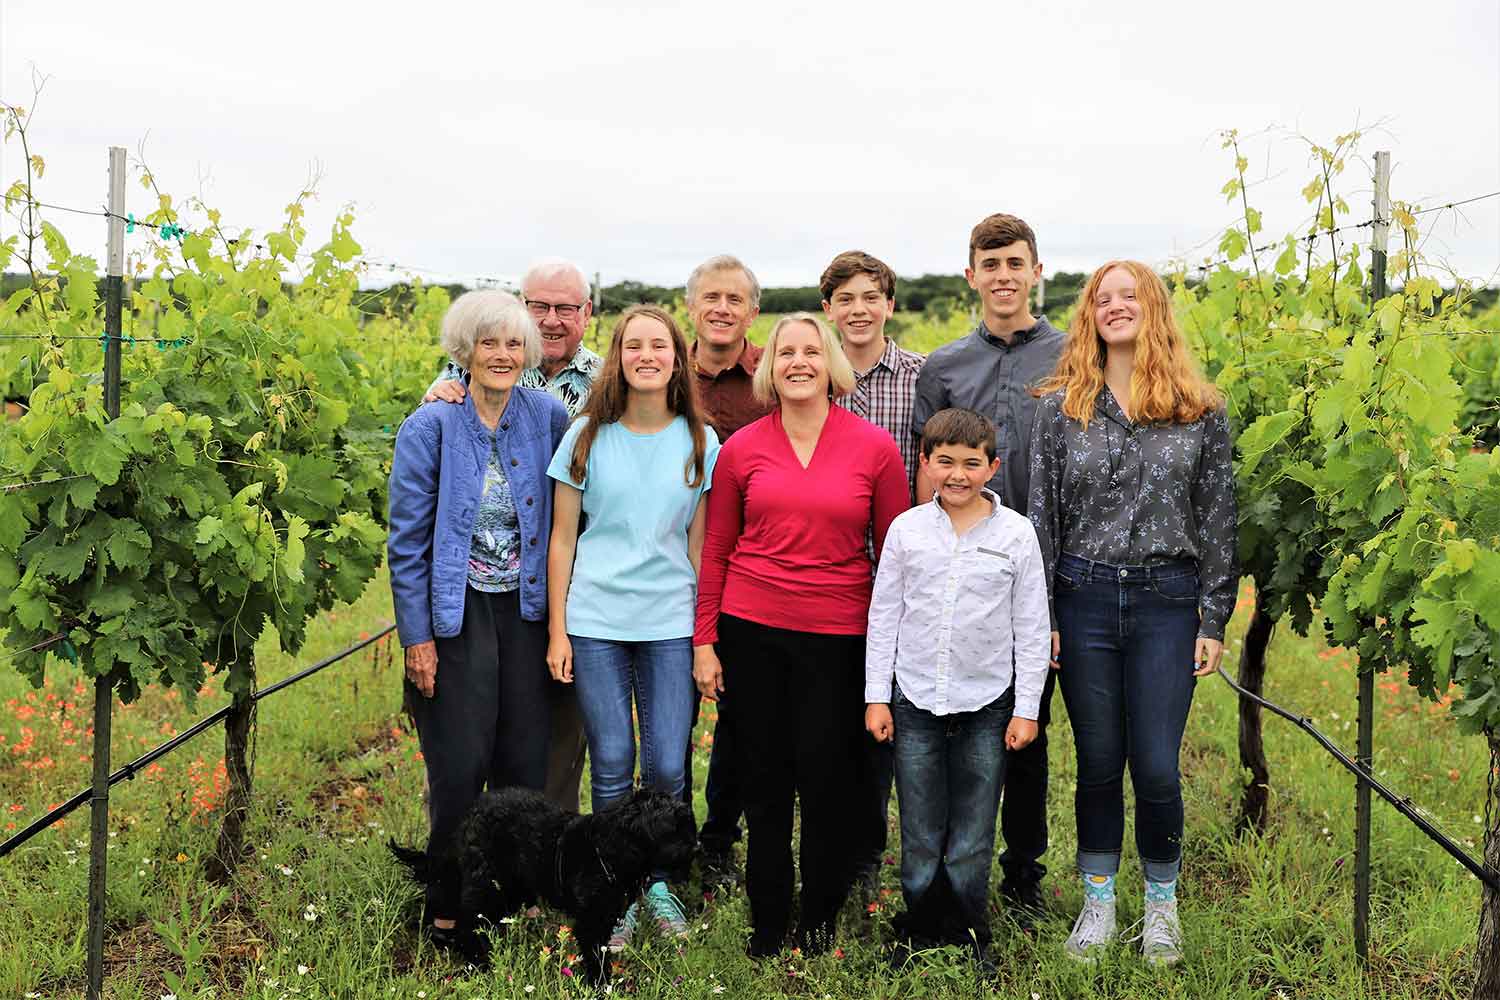 Kuhlken family in estate vineyard